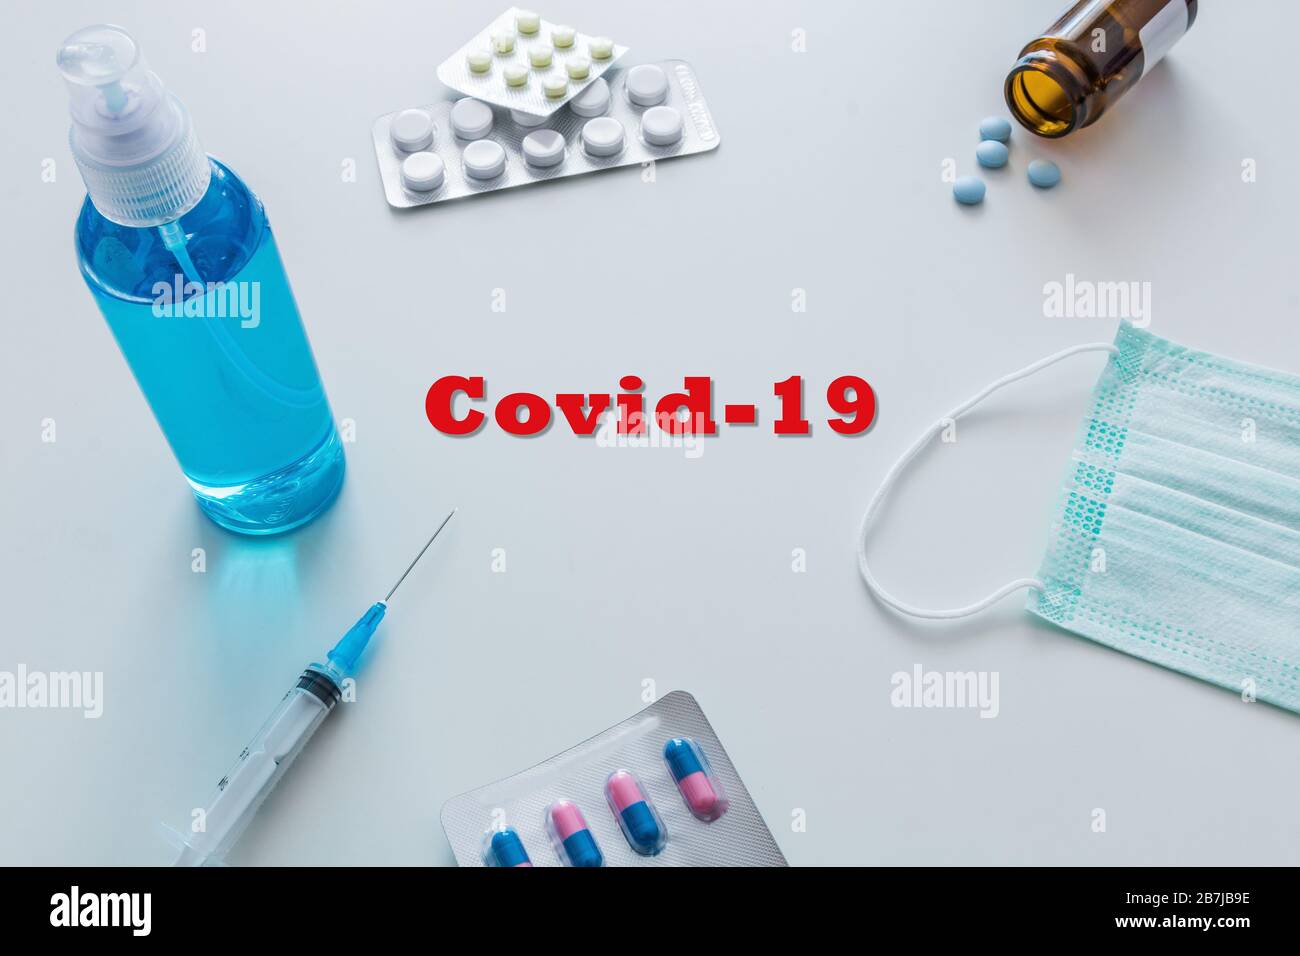 Beschriftung COVID-19 auf weißem Hintergrund. Weltgesundheitsorganisation, DIE einen neuen offiziellen Namen für Coronavirus Krankheit mit dem Namen COVID-19 einführte. Stockfoto